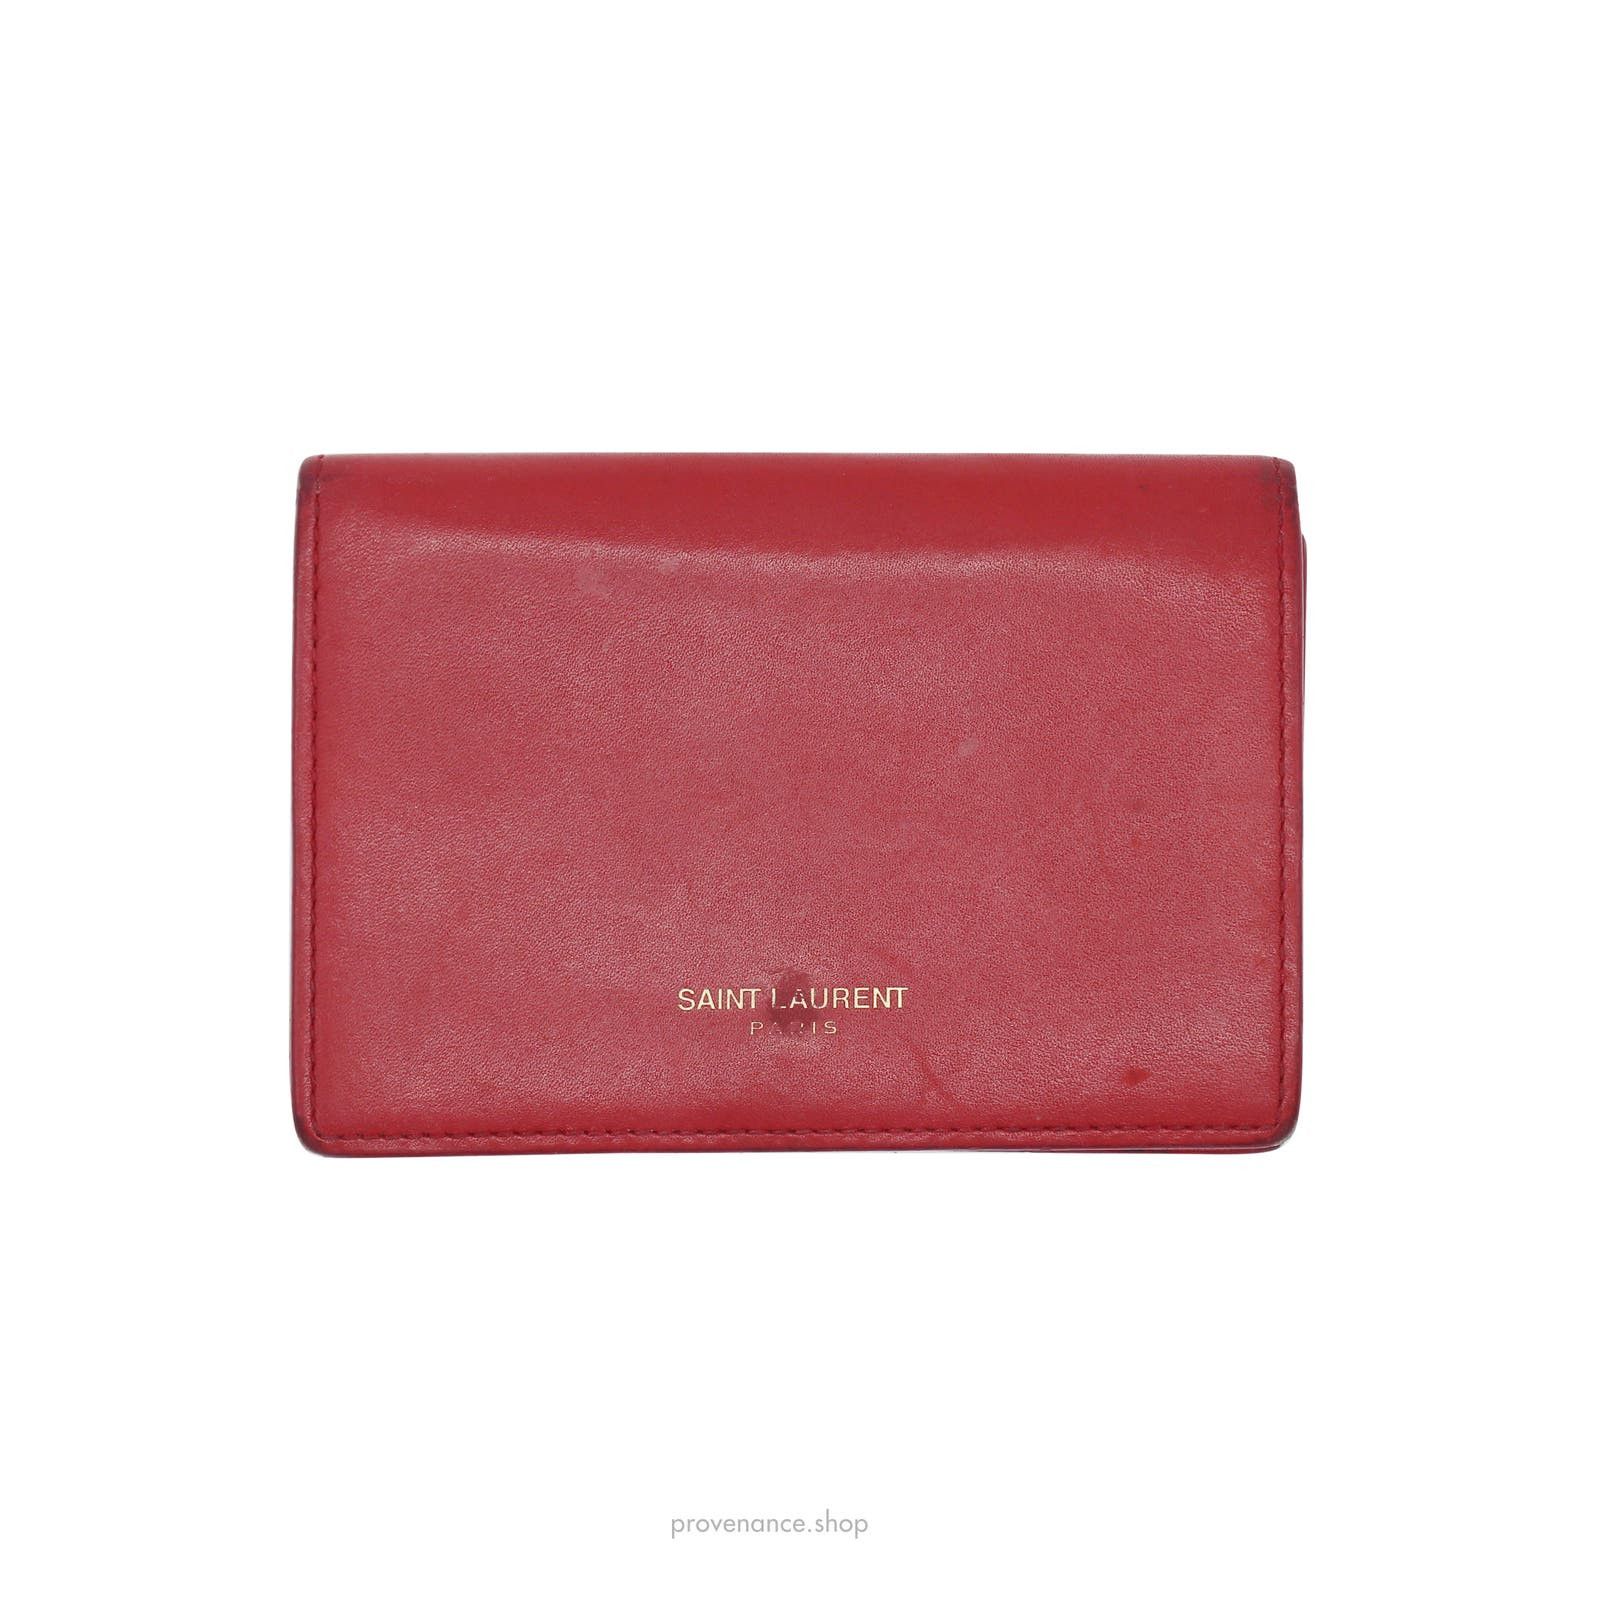 Saint Laurent Paris 🔴 Saint Laurent Paris SLP Card Holder - Poppy Red Leather Size ONE SIZE - 1 Preview